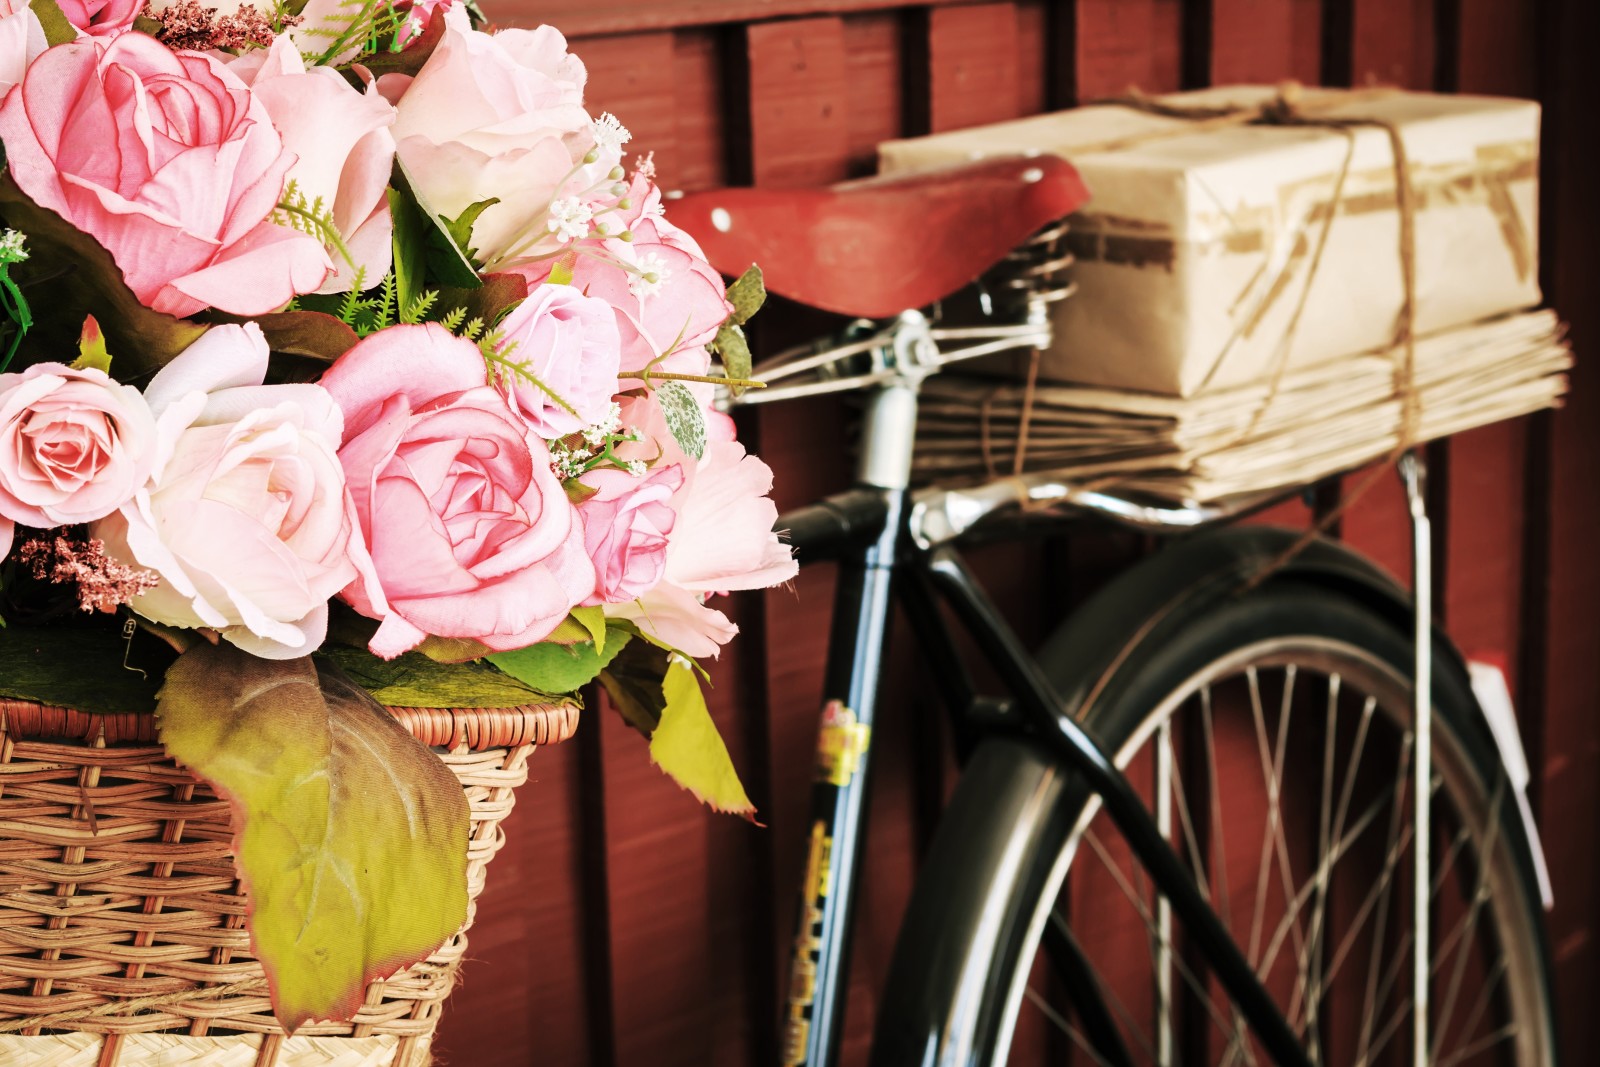 mawar, bunga-bunga, buket, retro, sepeda, bunga